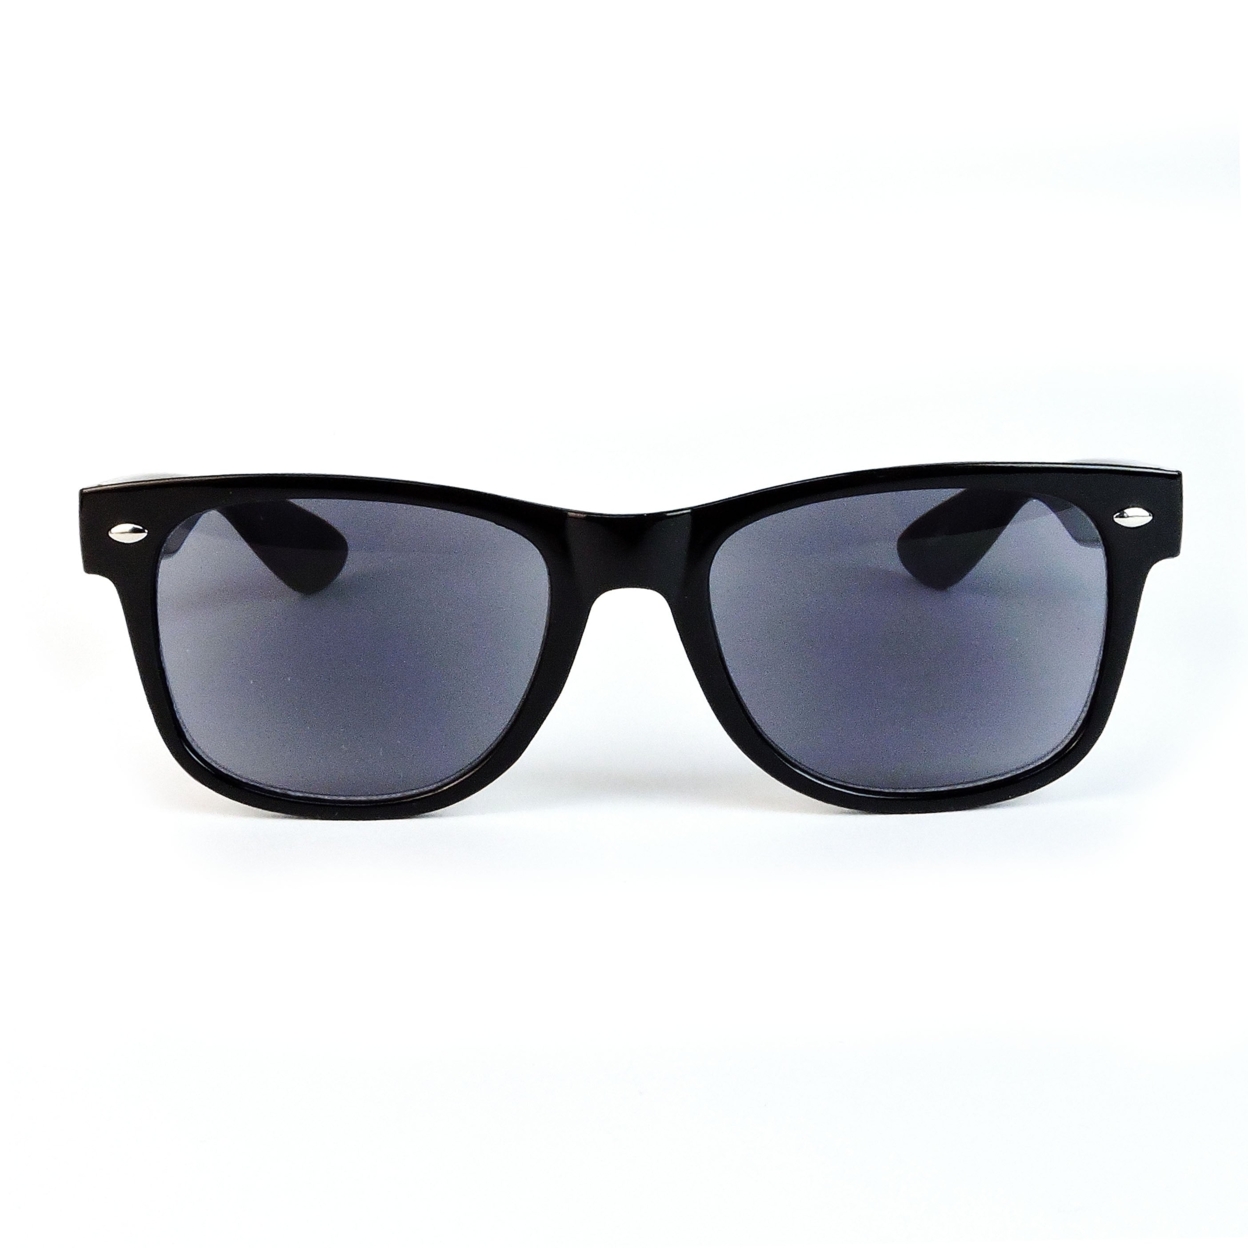 Sun Readers Full Lens Classic Frame 80's Retro Style Reading Sunglasses - Black, +1.50